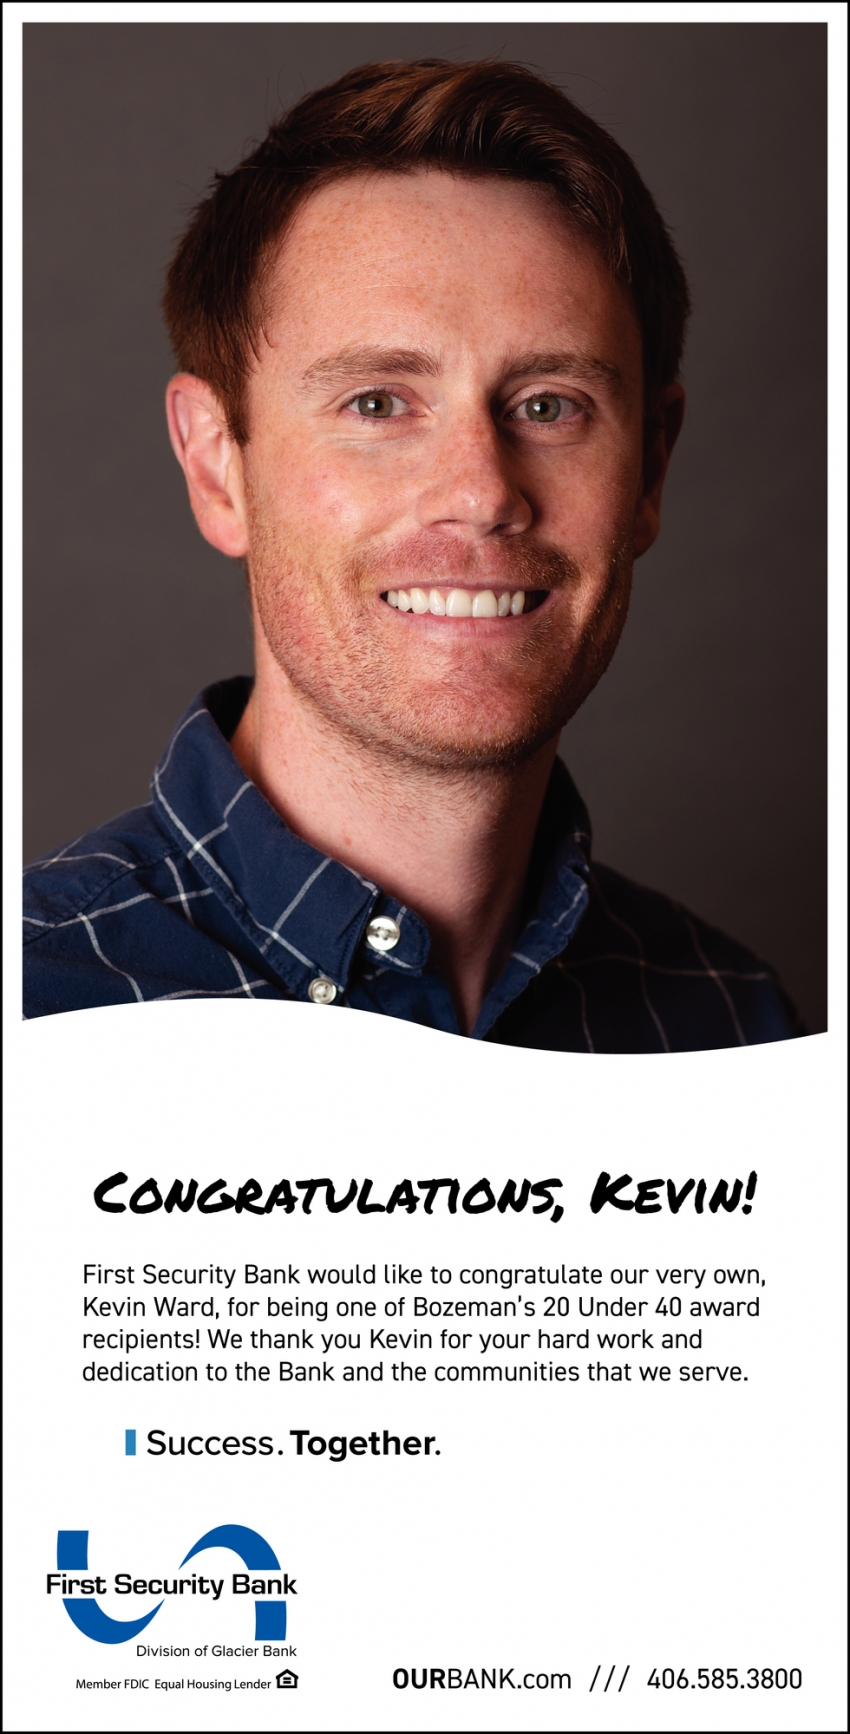 Congratulations, Keving!